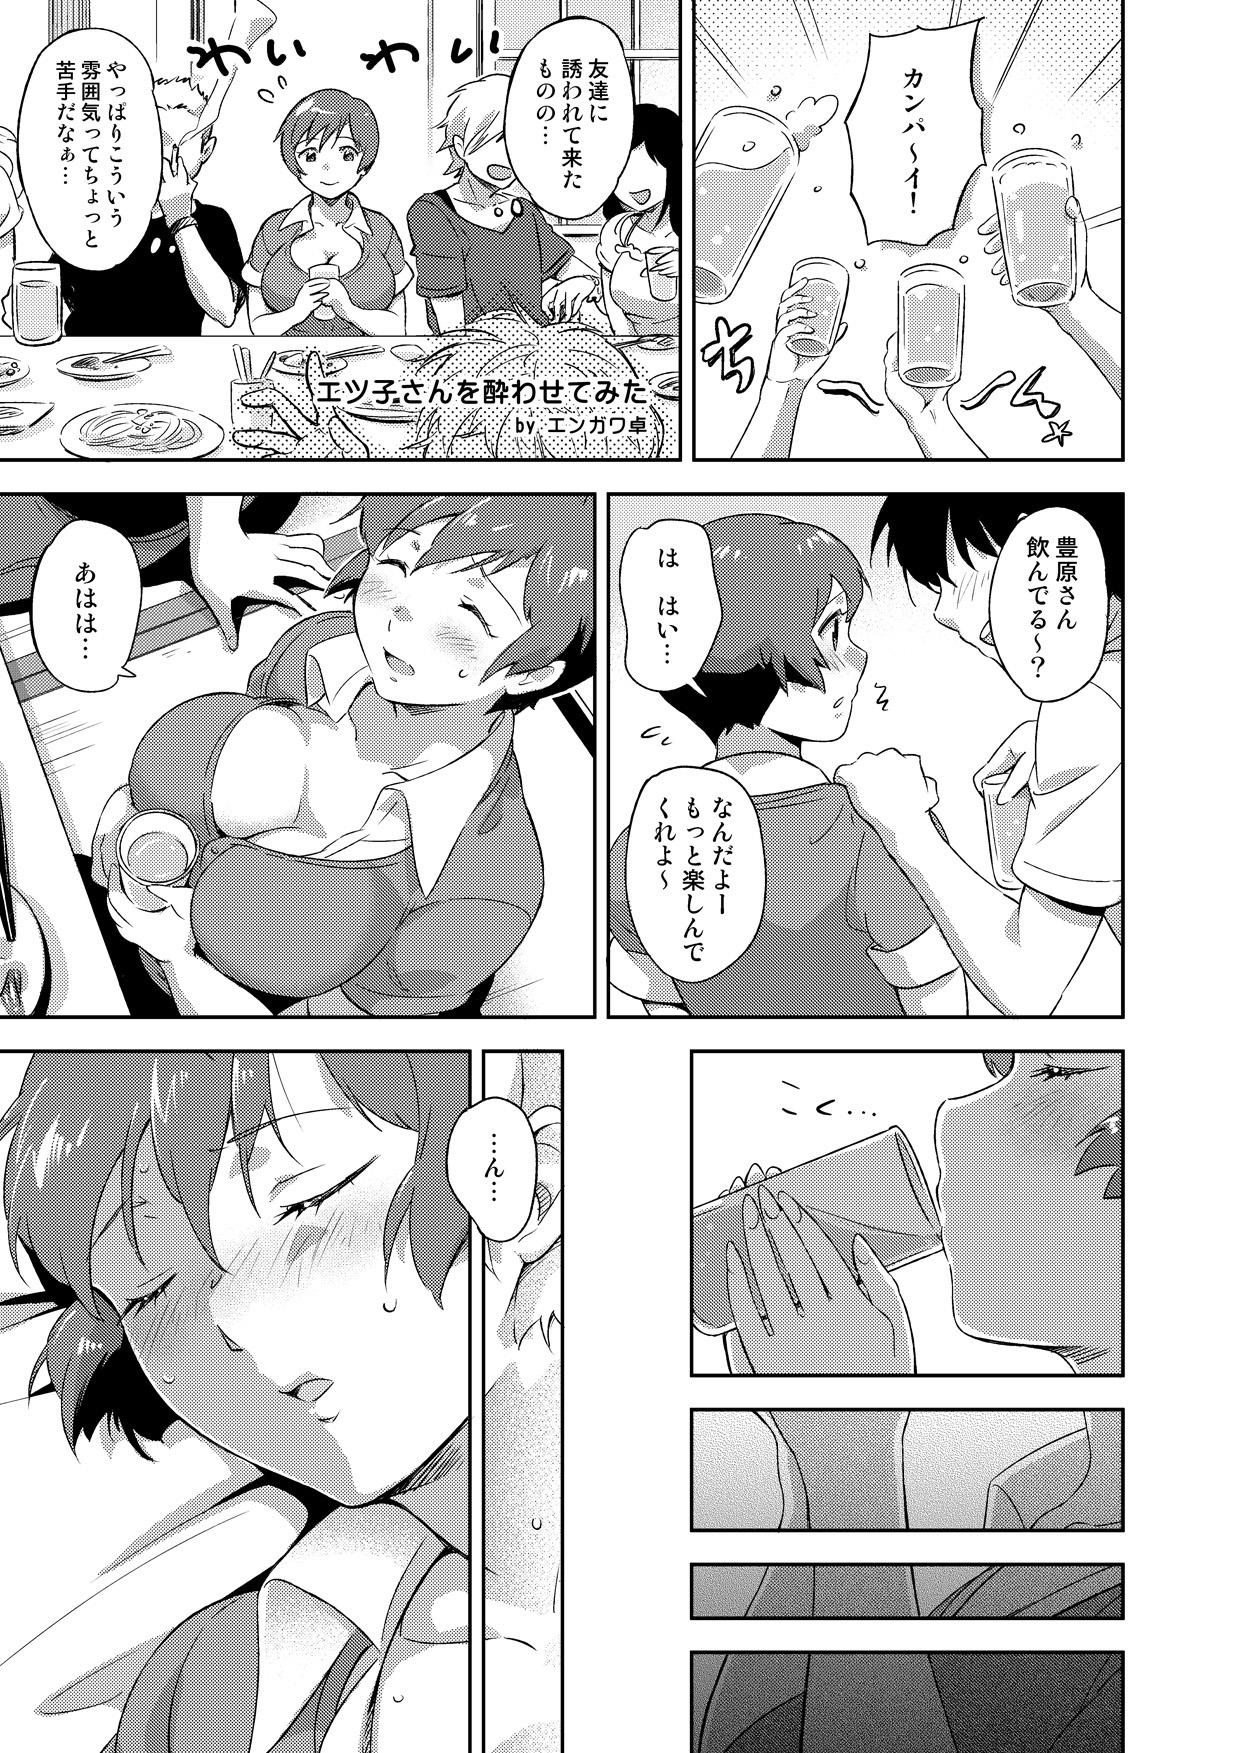 Twinkstudios P7 Manga Matomemashita - Super real mahjong Pete - Page 11